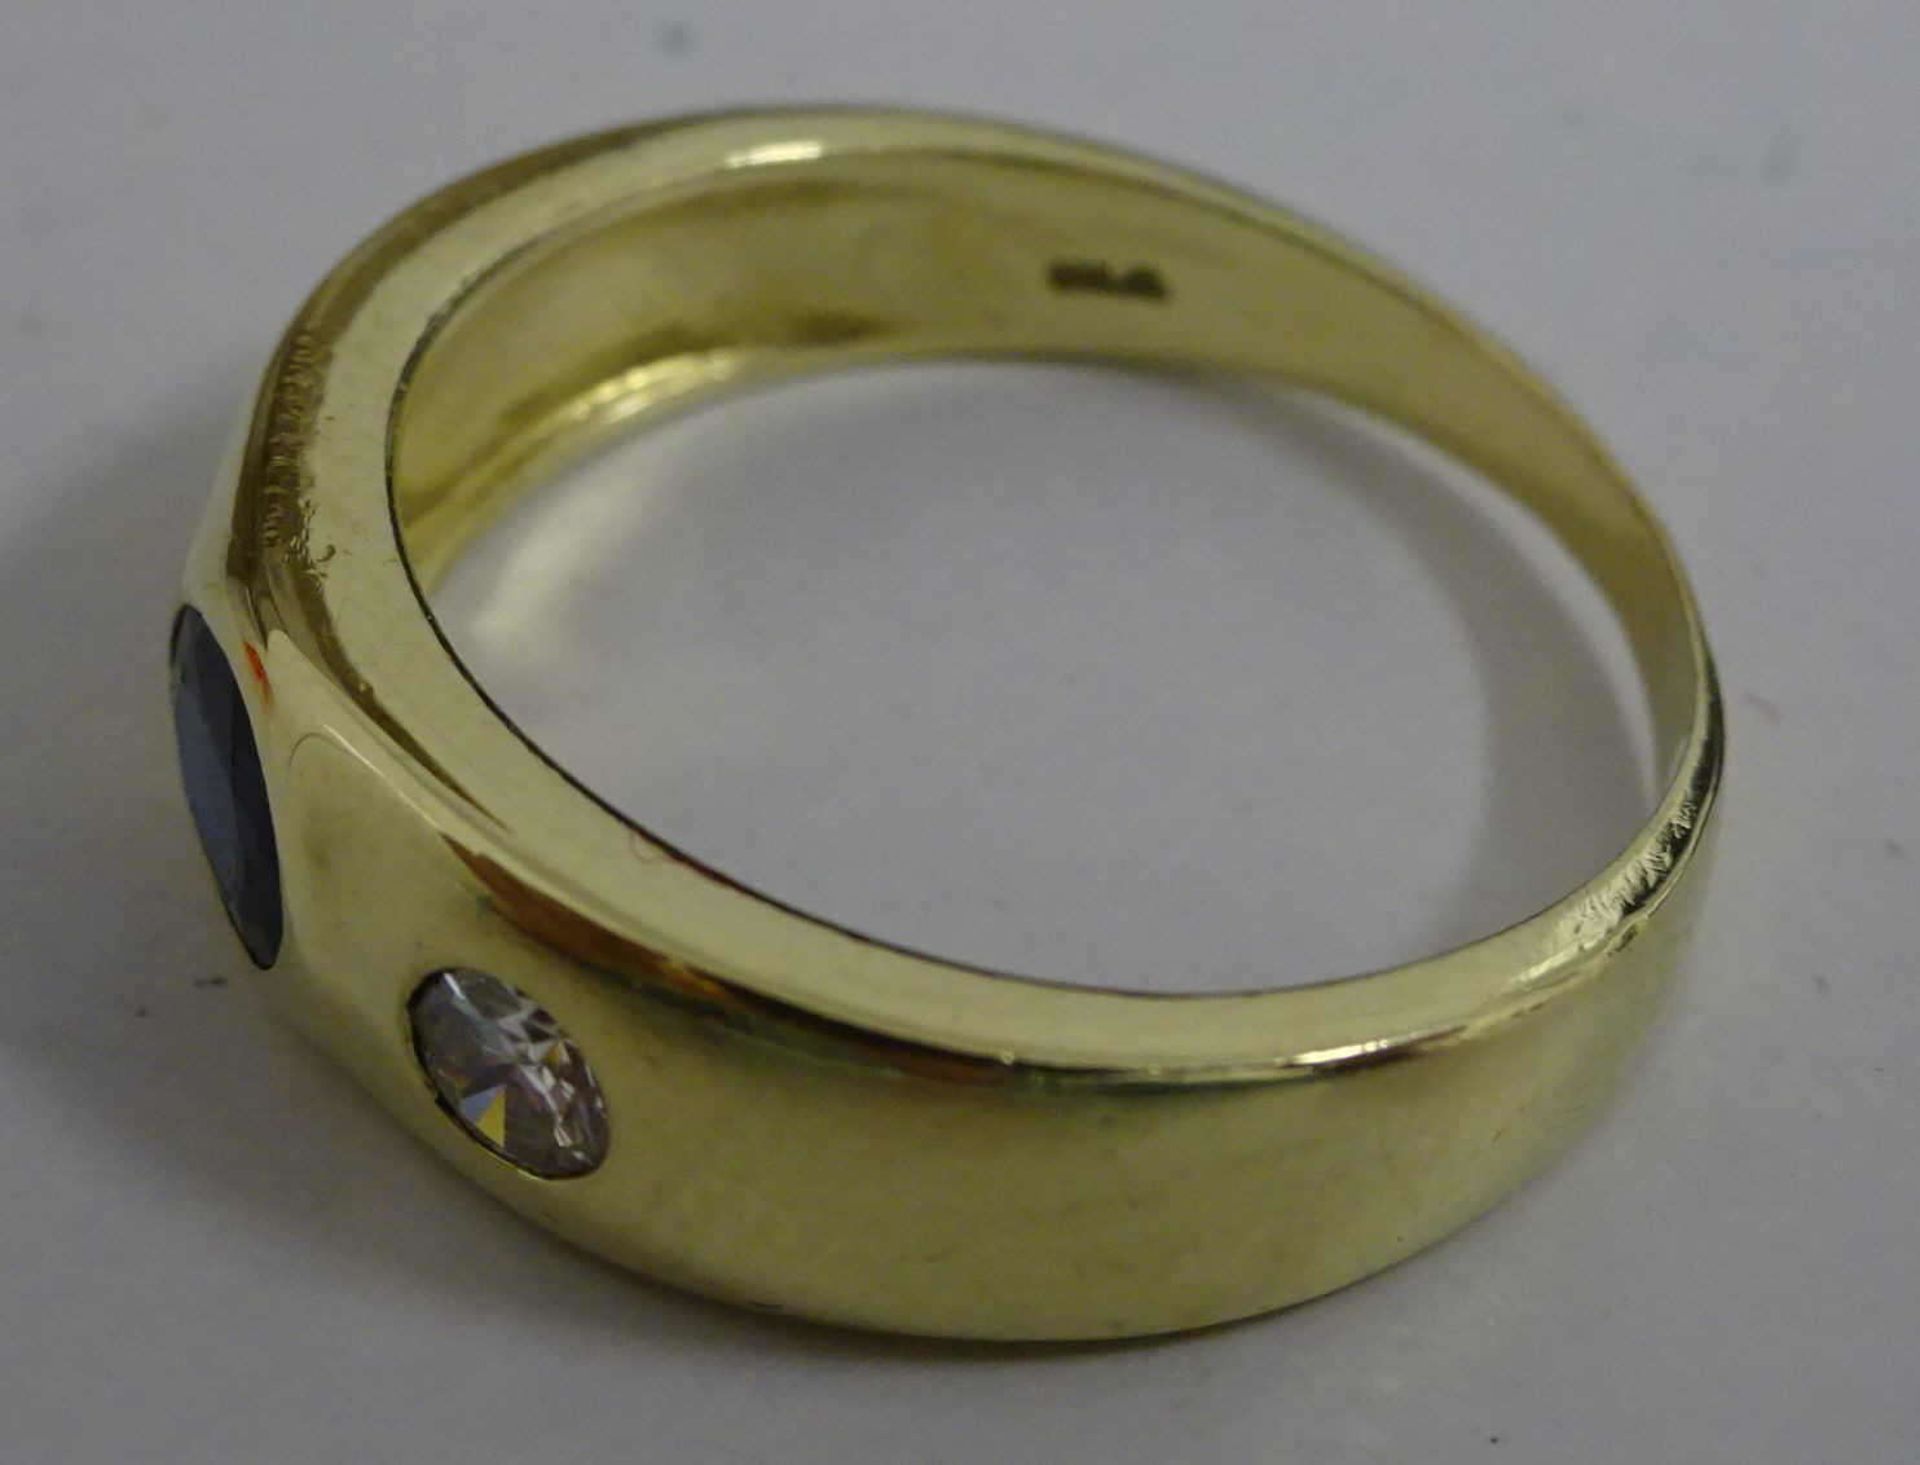 Damenring, 585er Gelbgold, besetzt mit 1 Saphir und 2 Brillianten, ca. 0,24 ct. Ringgröße 51. - Bild 2 aus 2